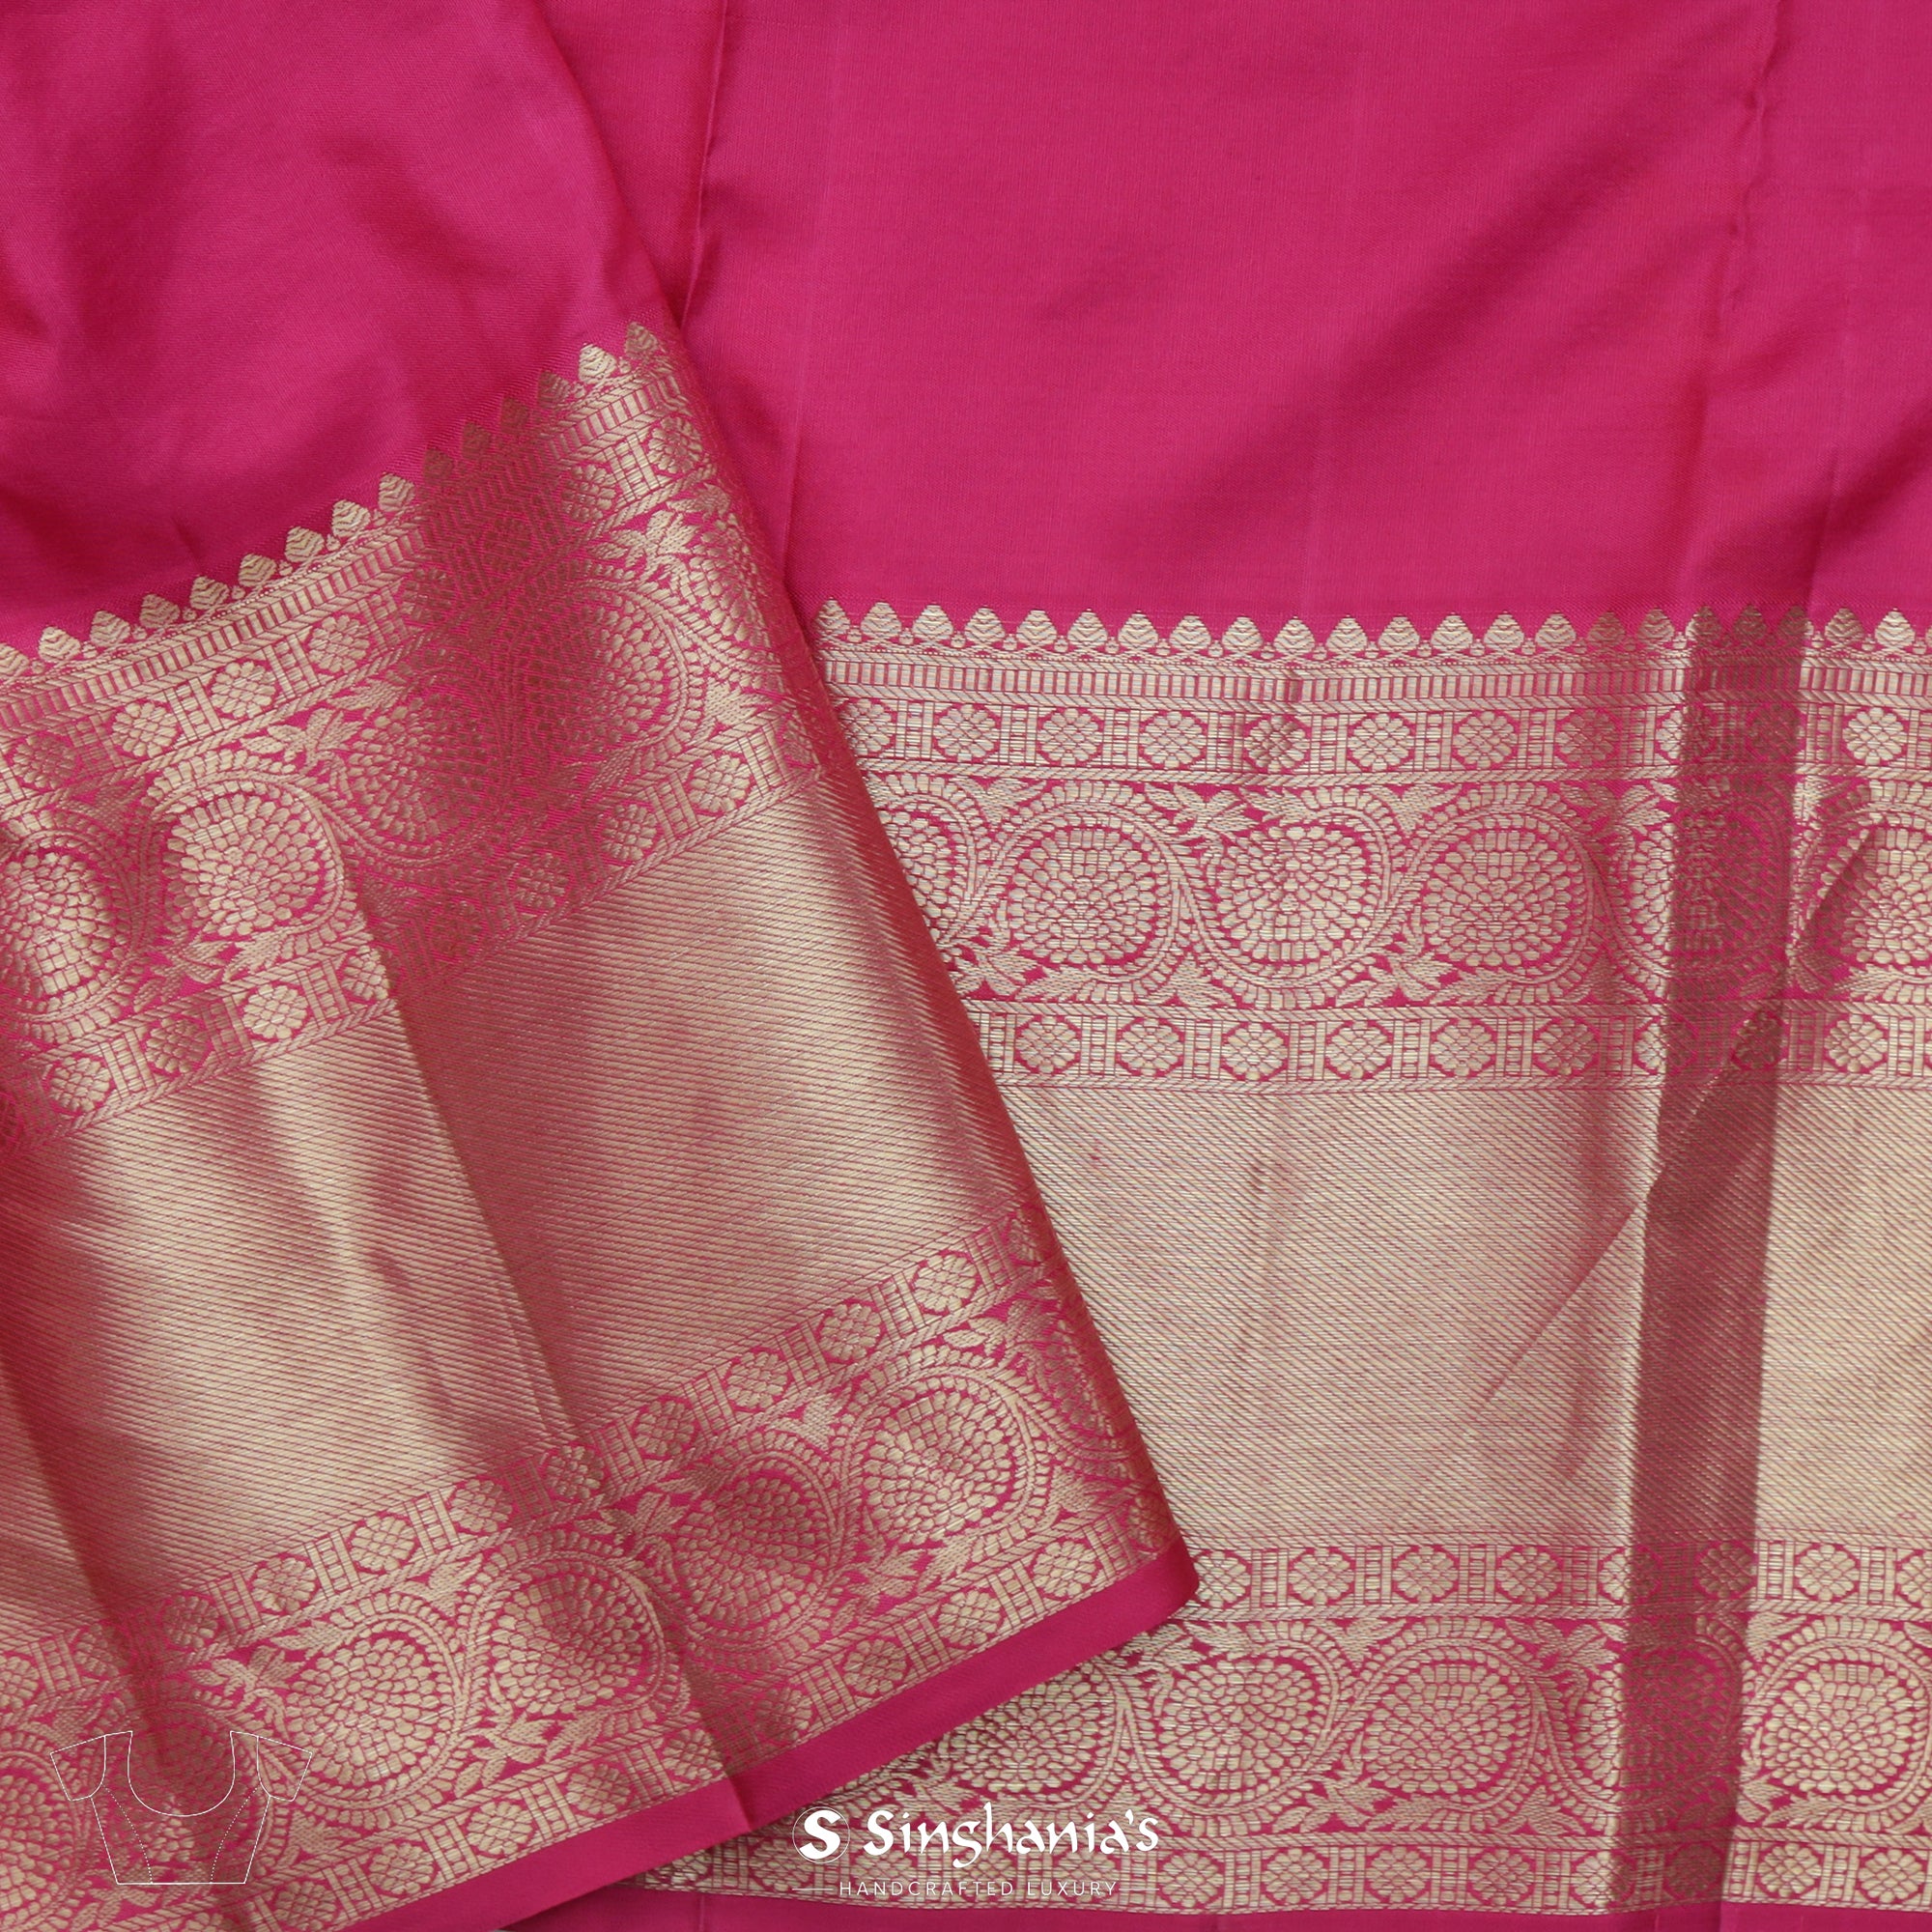 Gold Kanjivaram Silk Saree With Floral Jaal Weaving